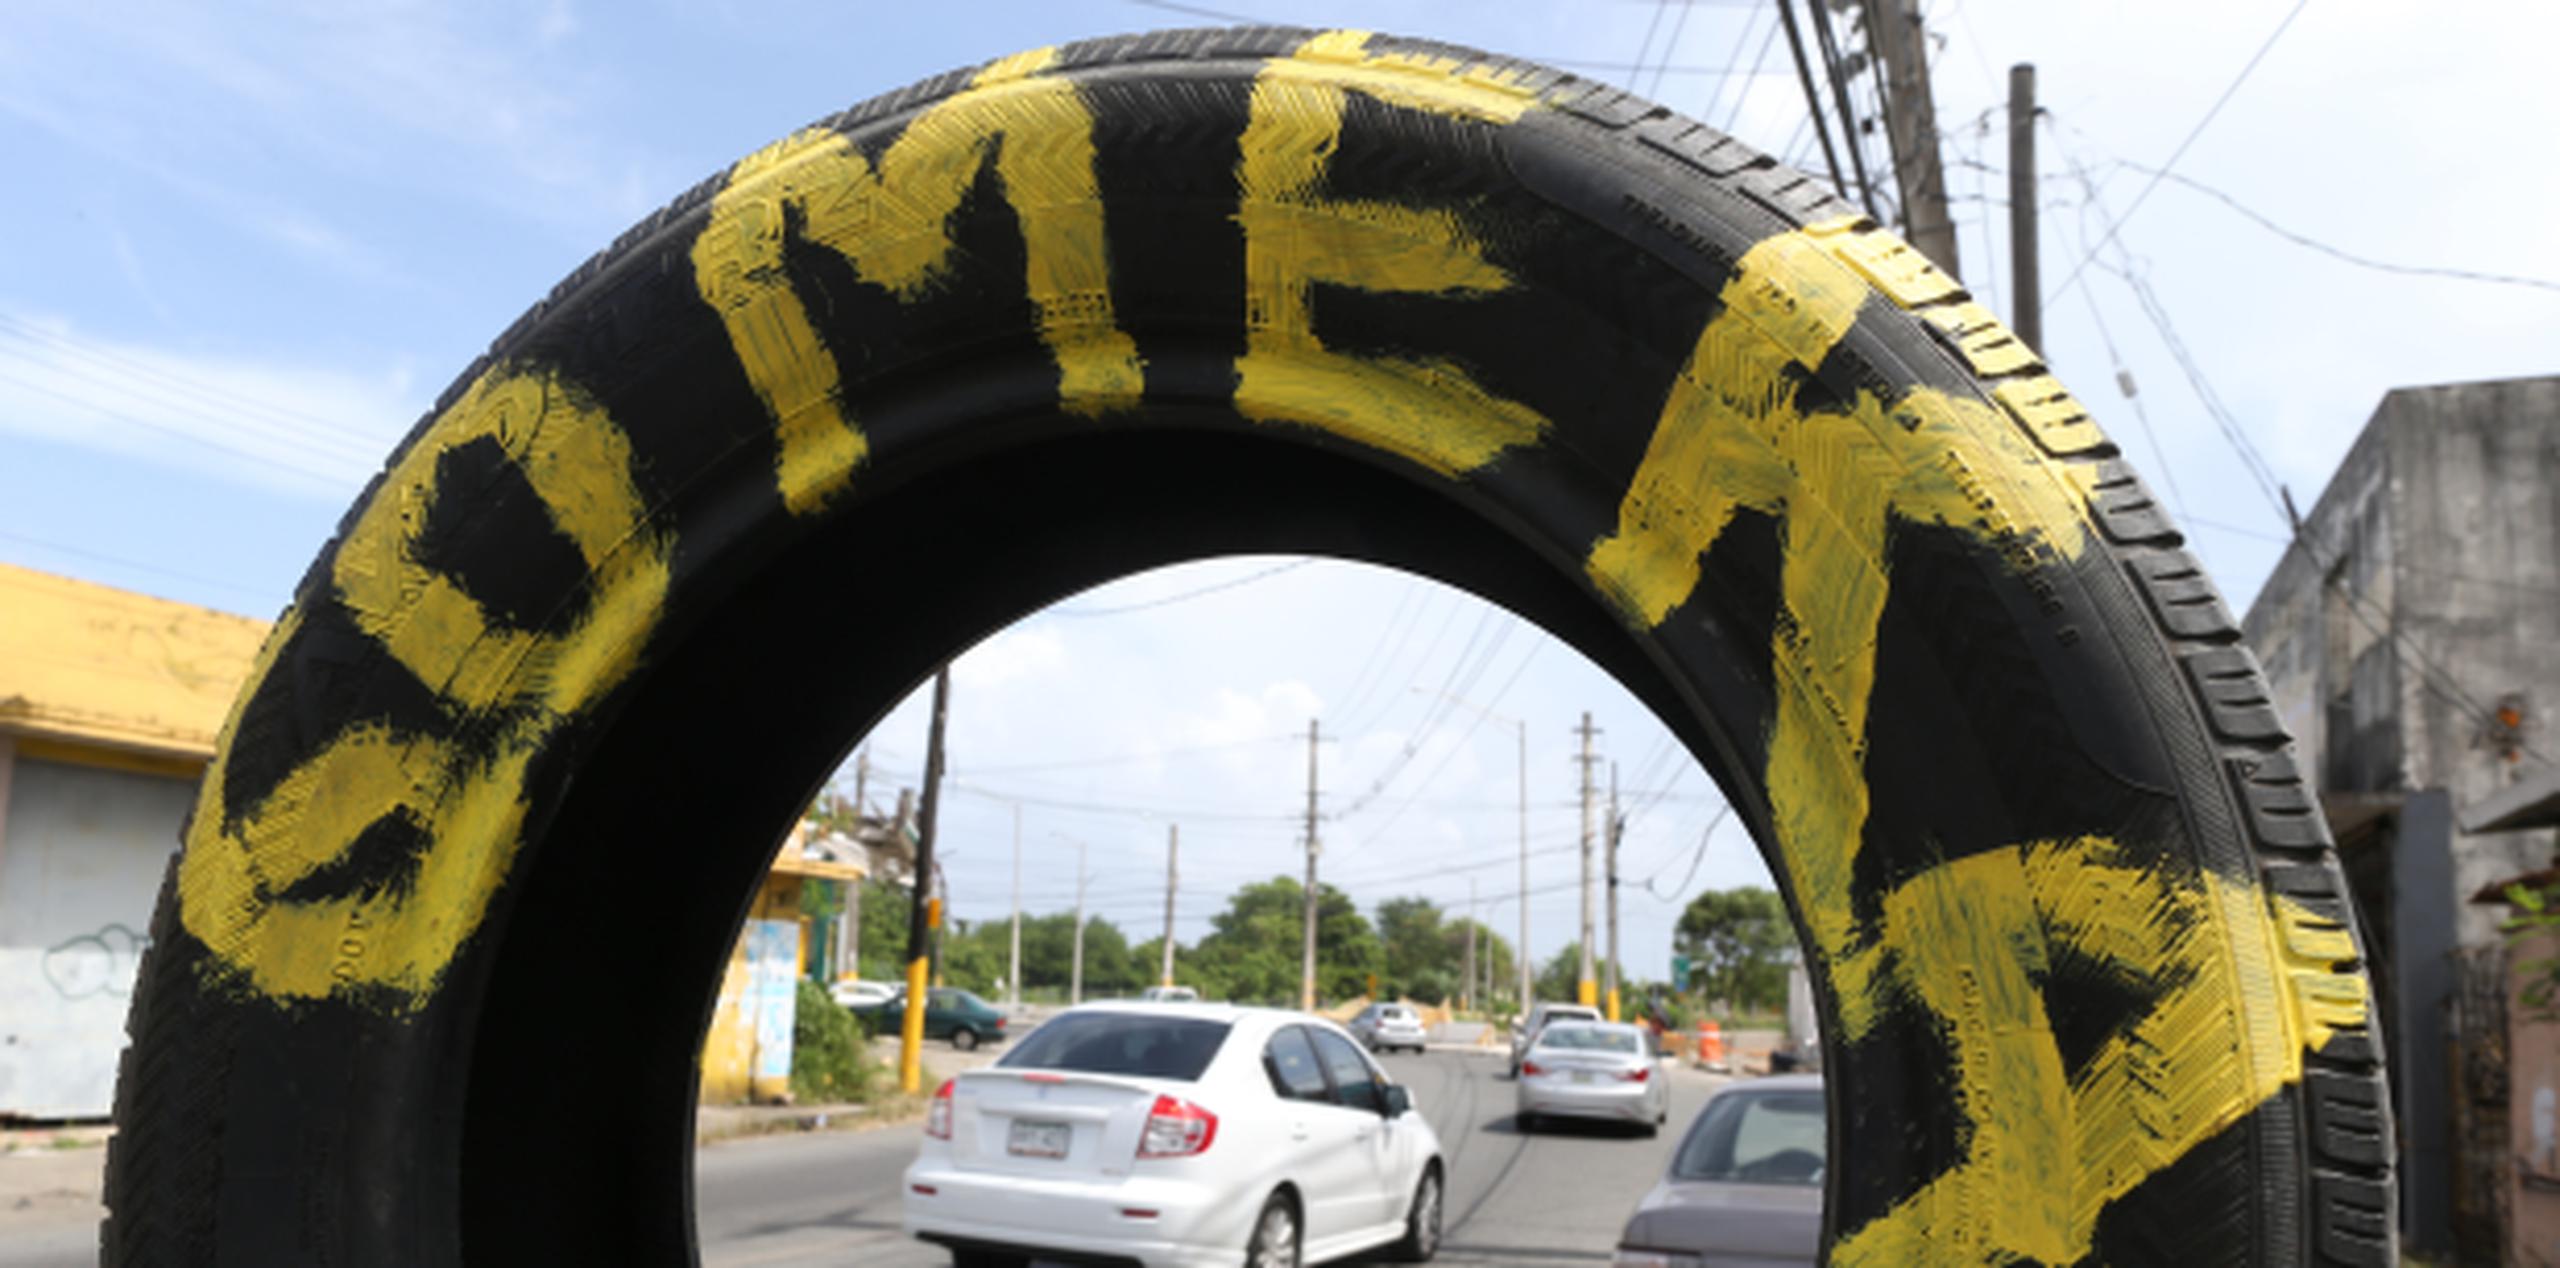 Actualmente no existe ley alguna que regule la venta de neumáticos usados, lo que representa un problema de seguridad pública. (Archivo)